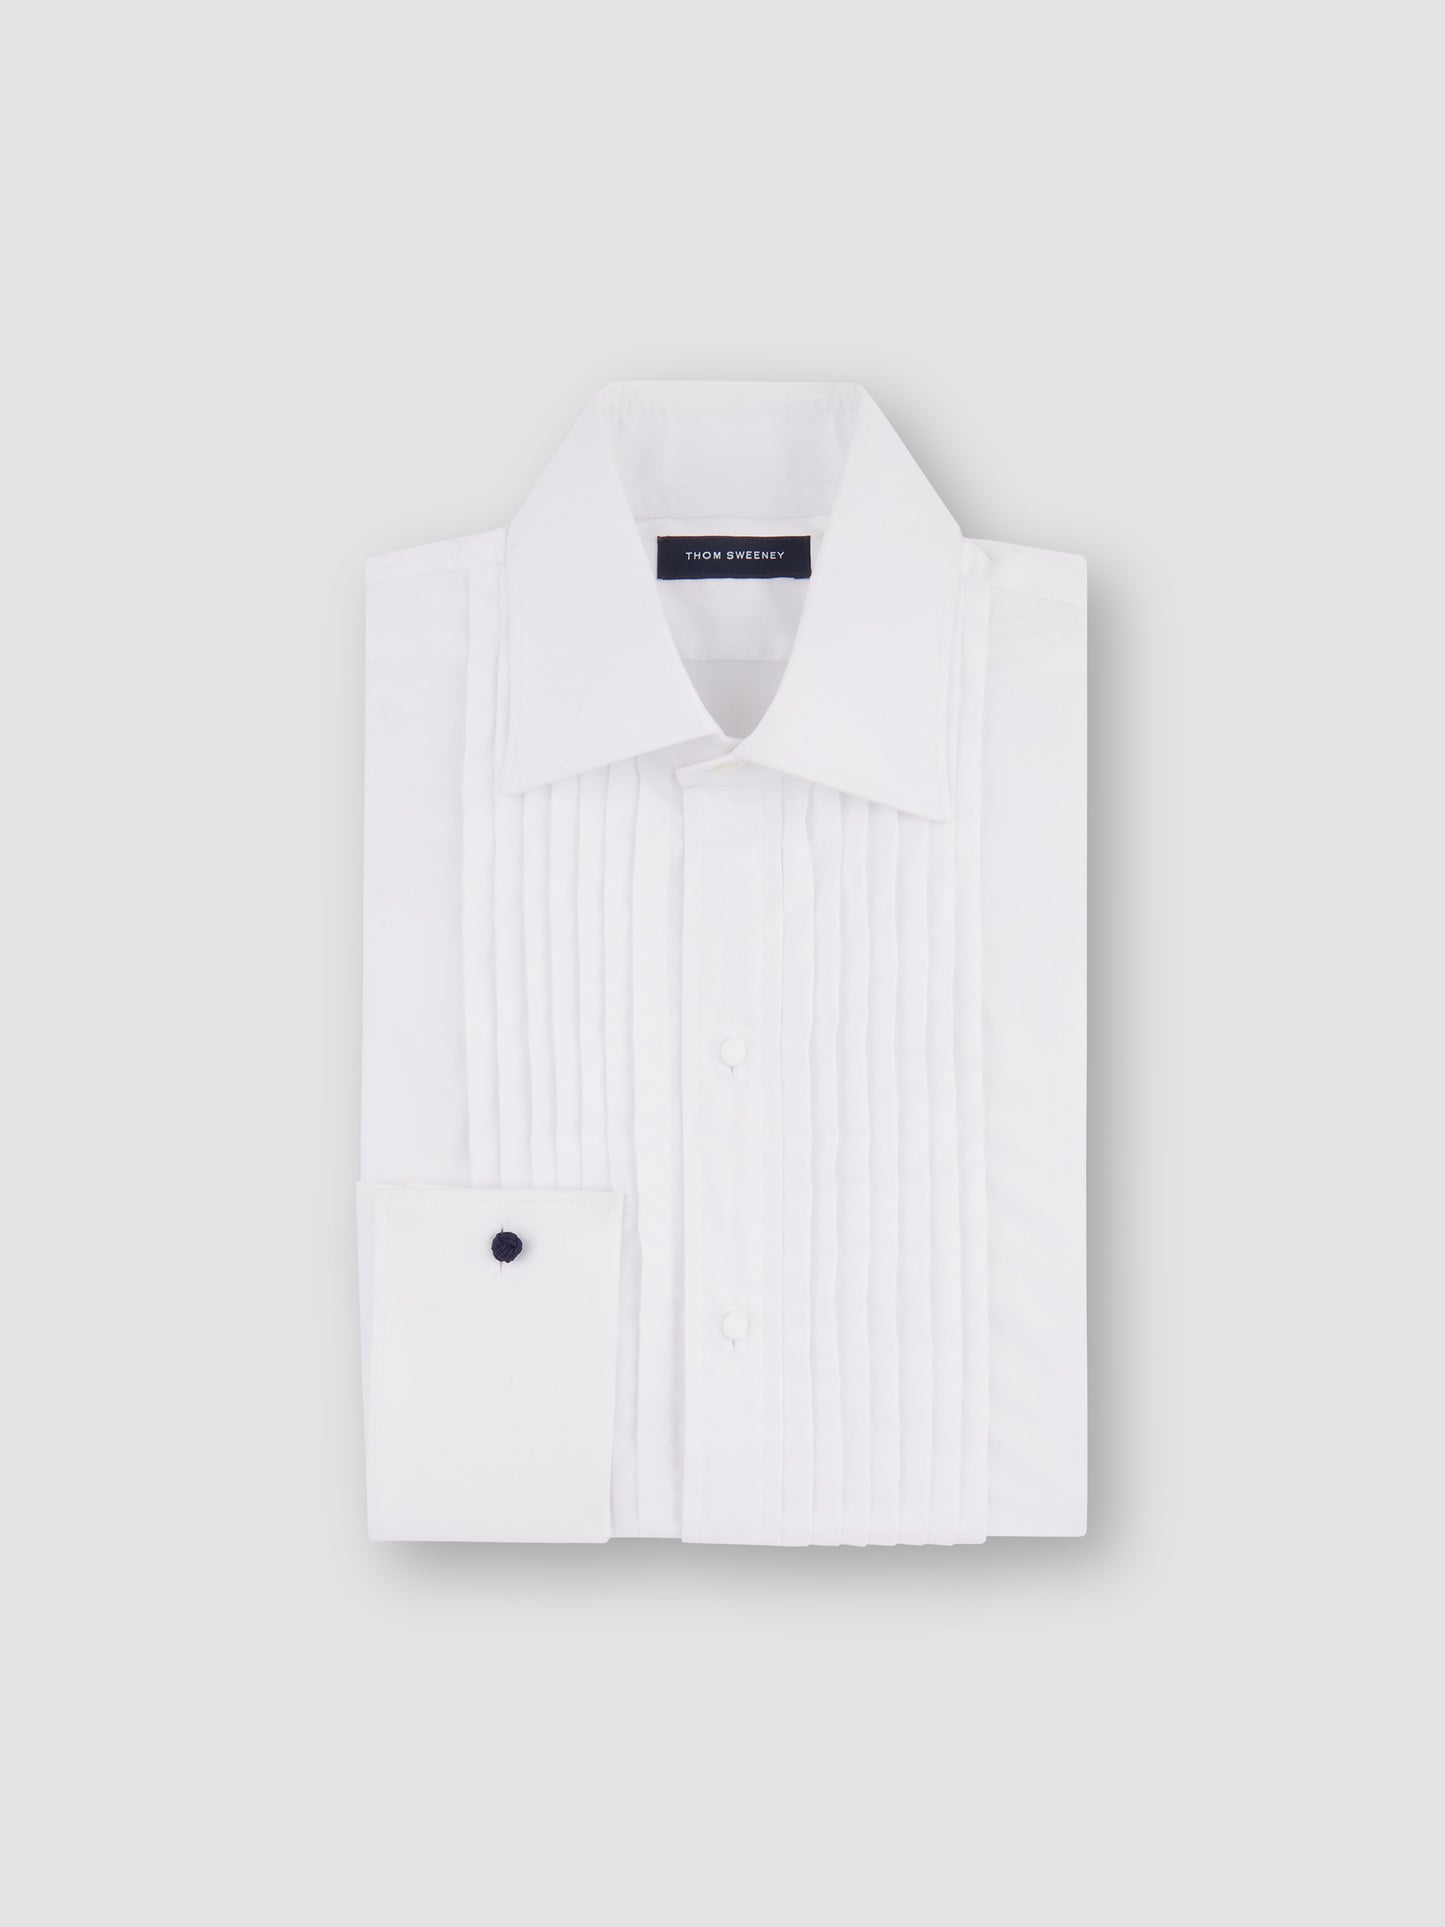 Duke of York Formal Shirt, White, Product folded